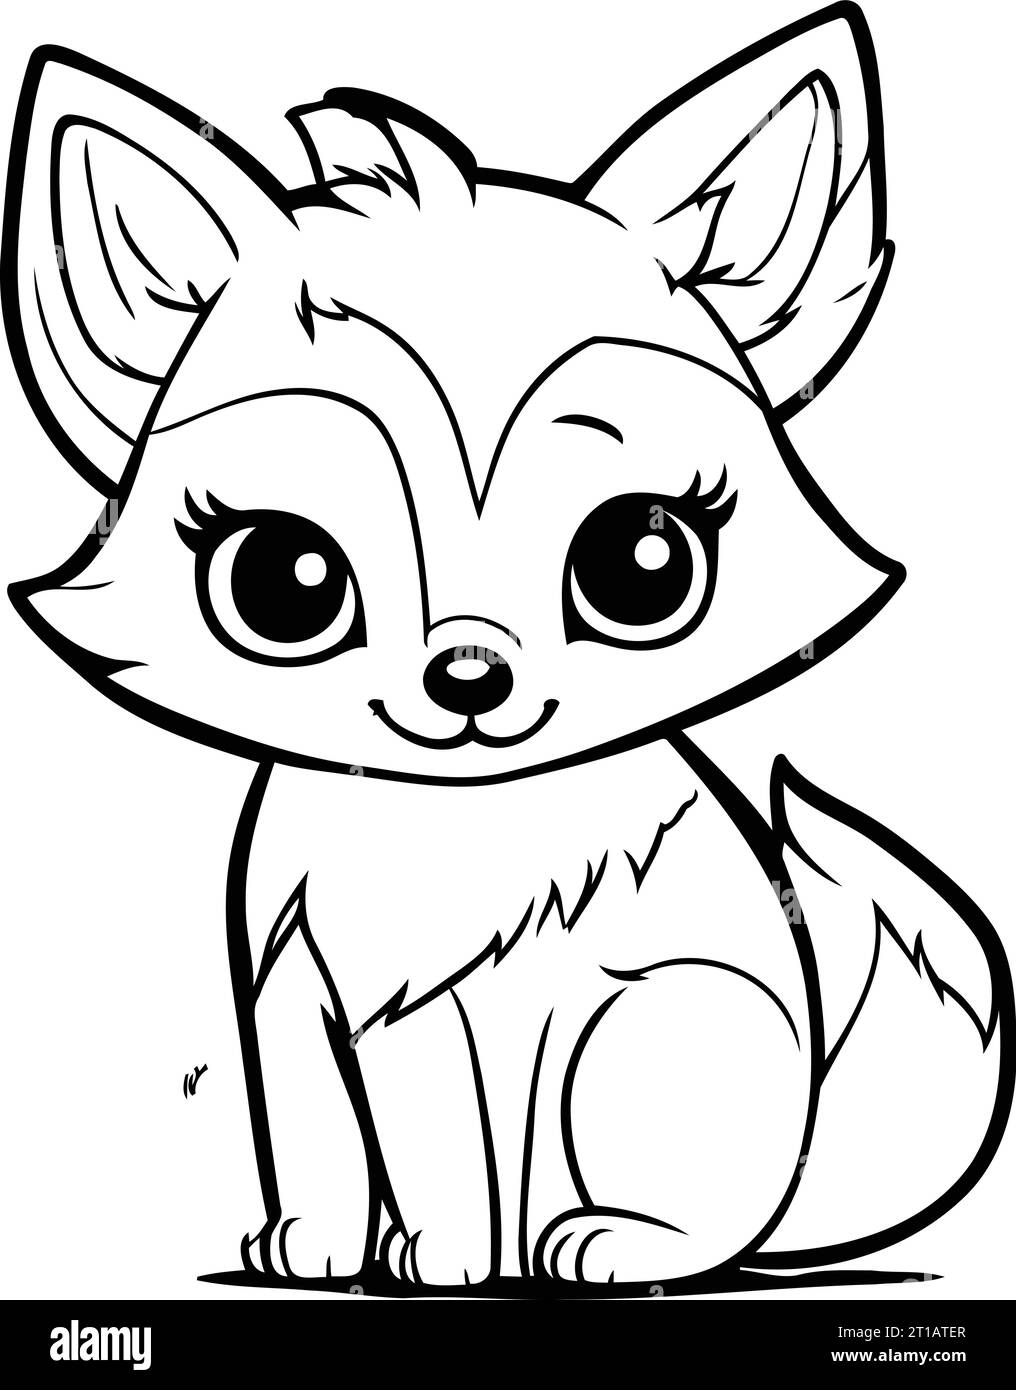 Dibujo para colorear quema de la pãgina de dibujos animados lindo fox animal coloring book imagen vector de stock